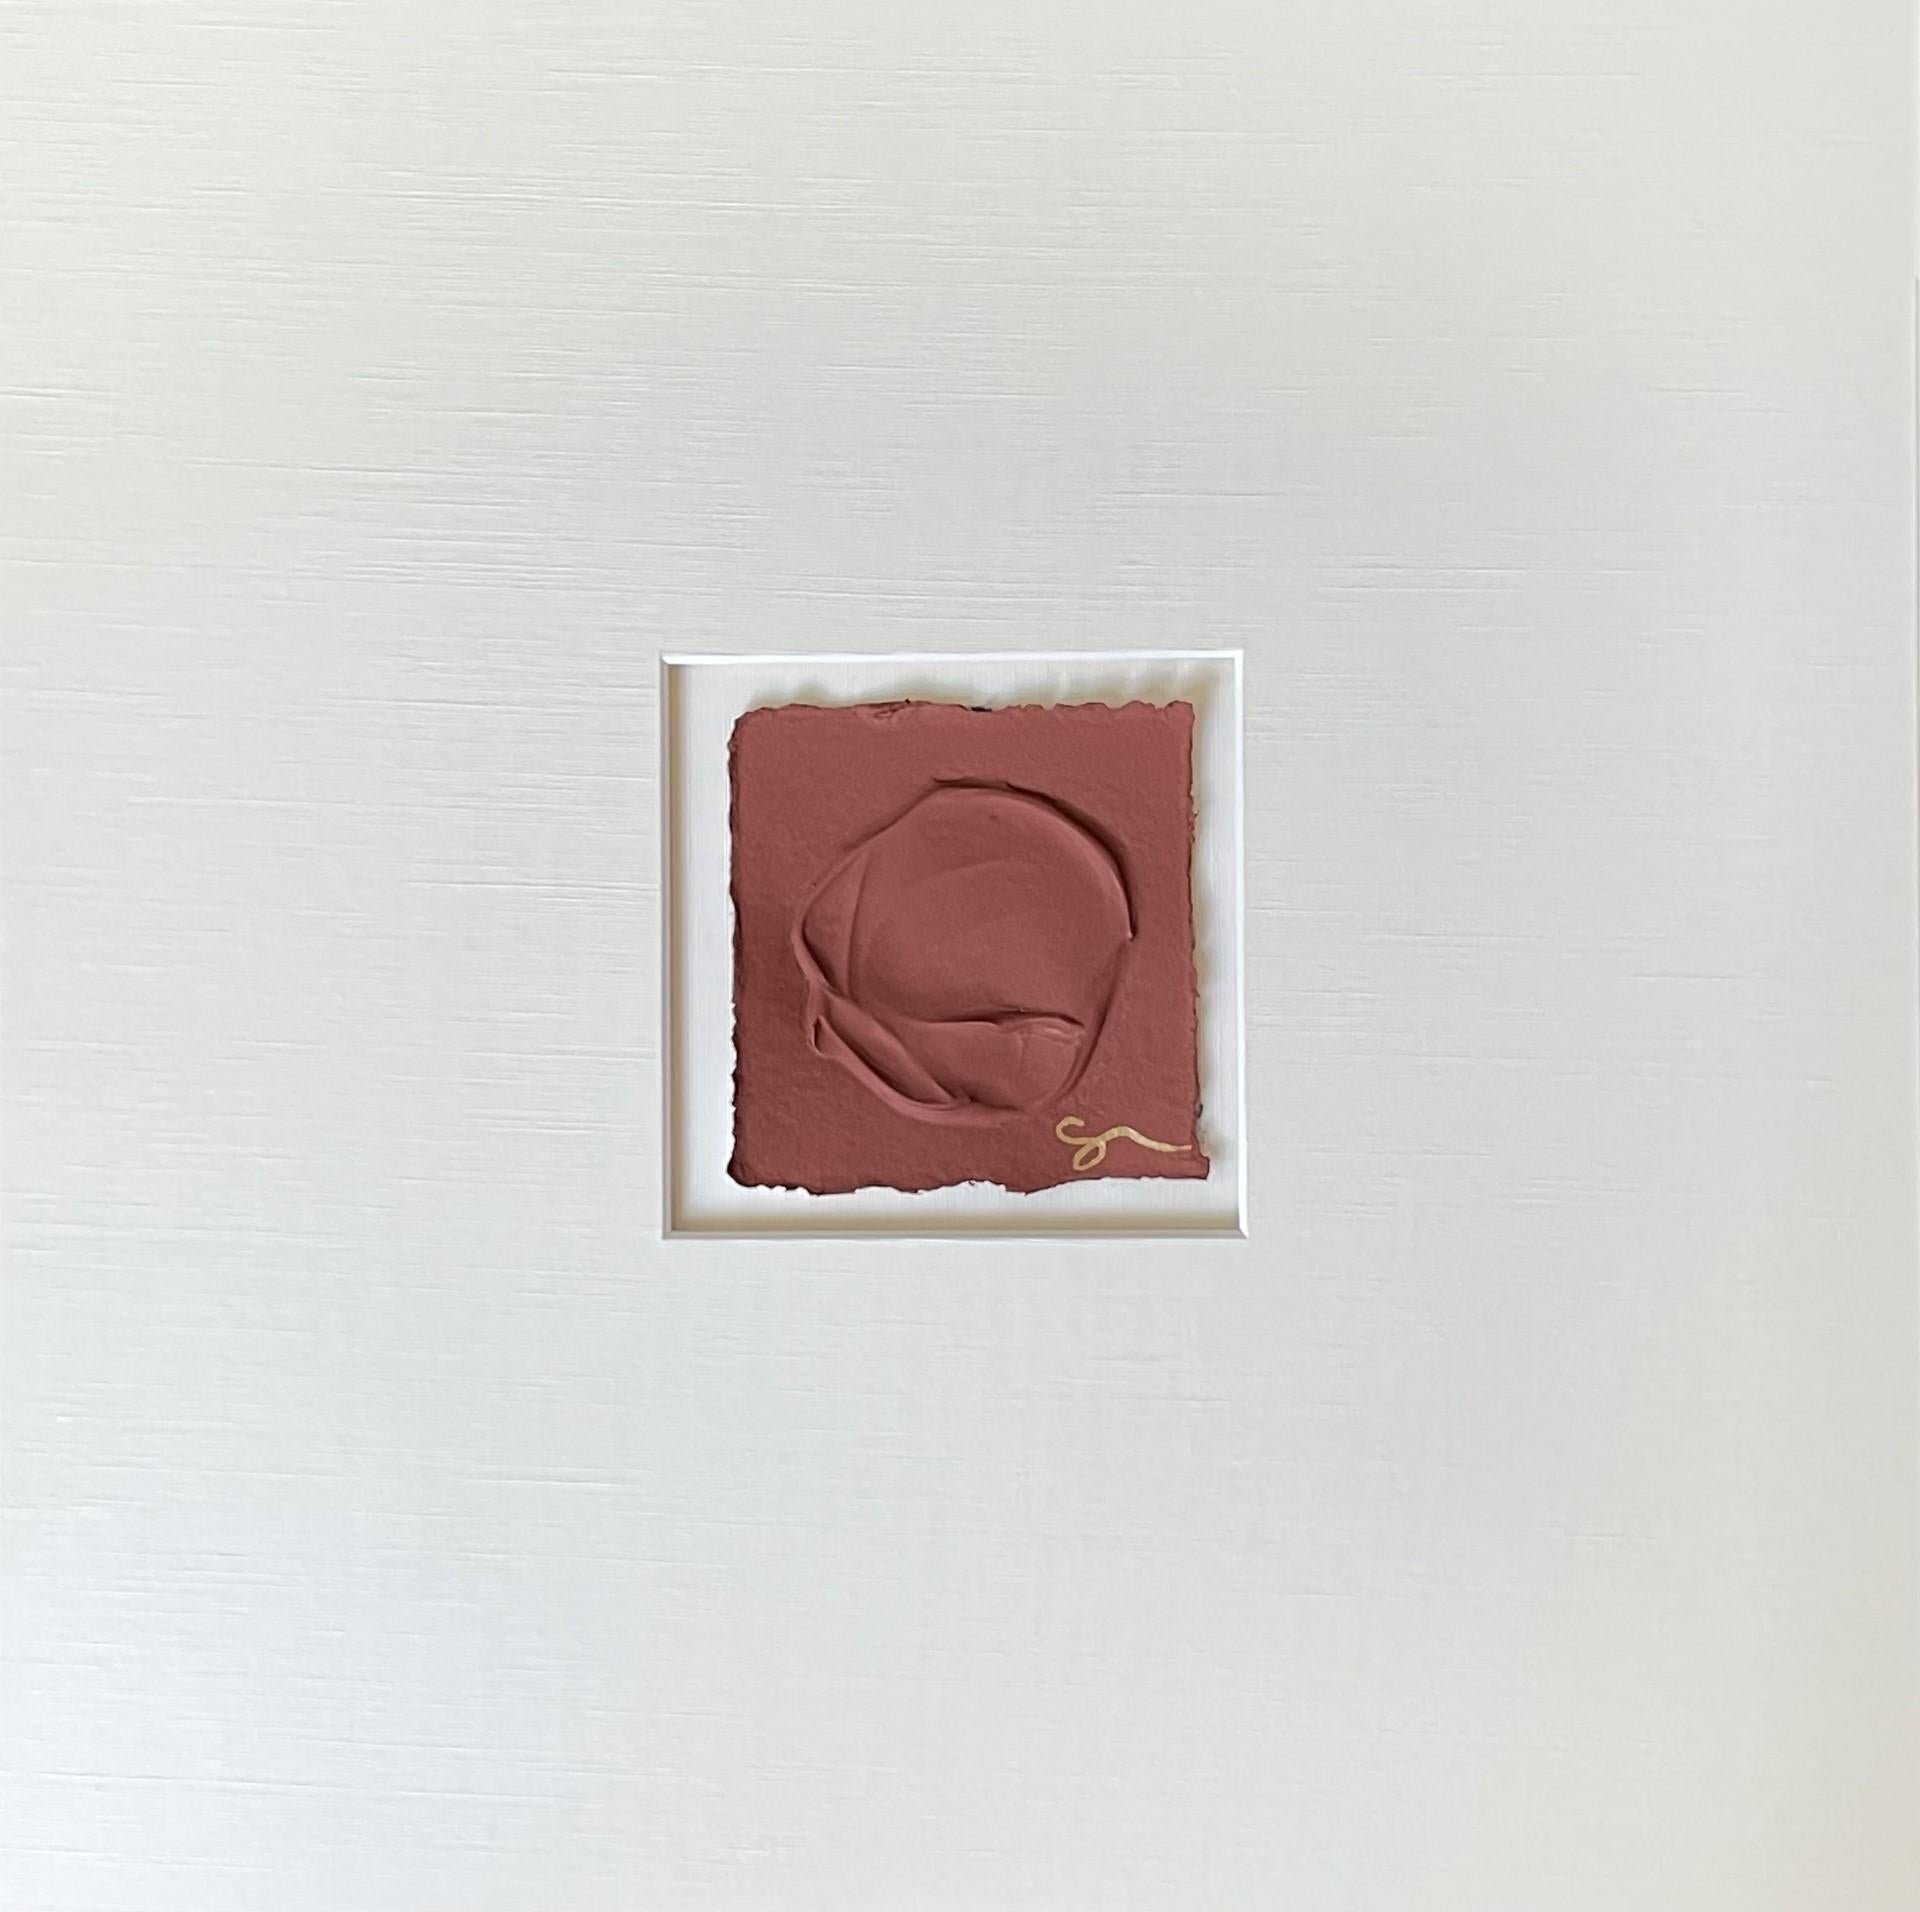 Bildergalerie Rot von Sally Threlkeld, gerahmtes quadratisches Ölgemälde auf Papier, Farbblock